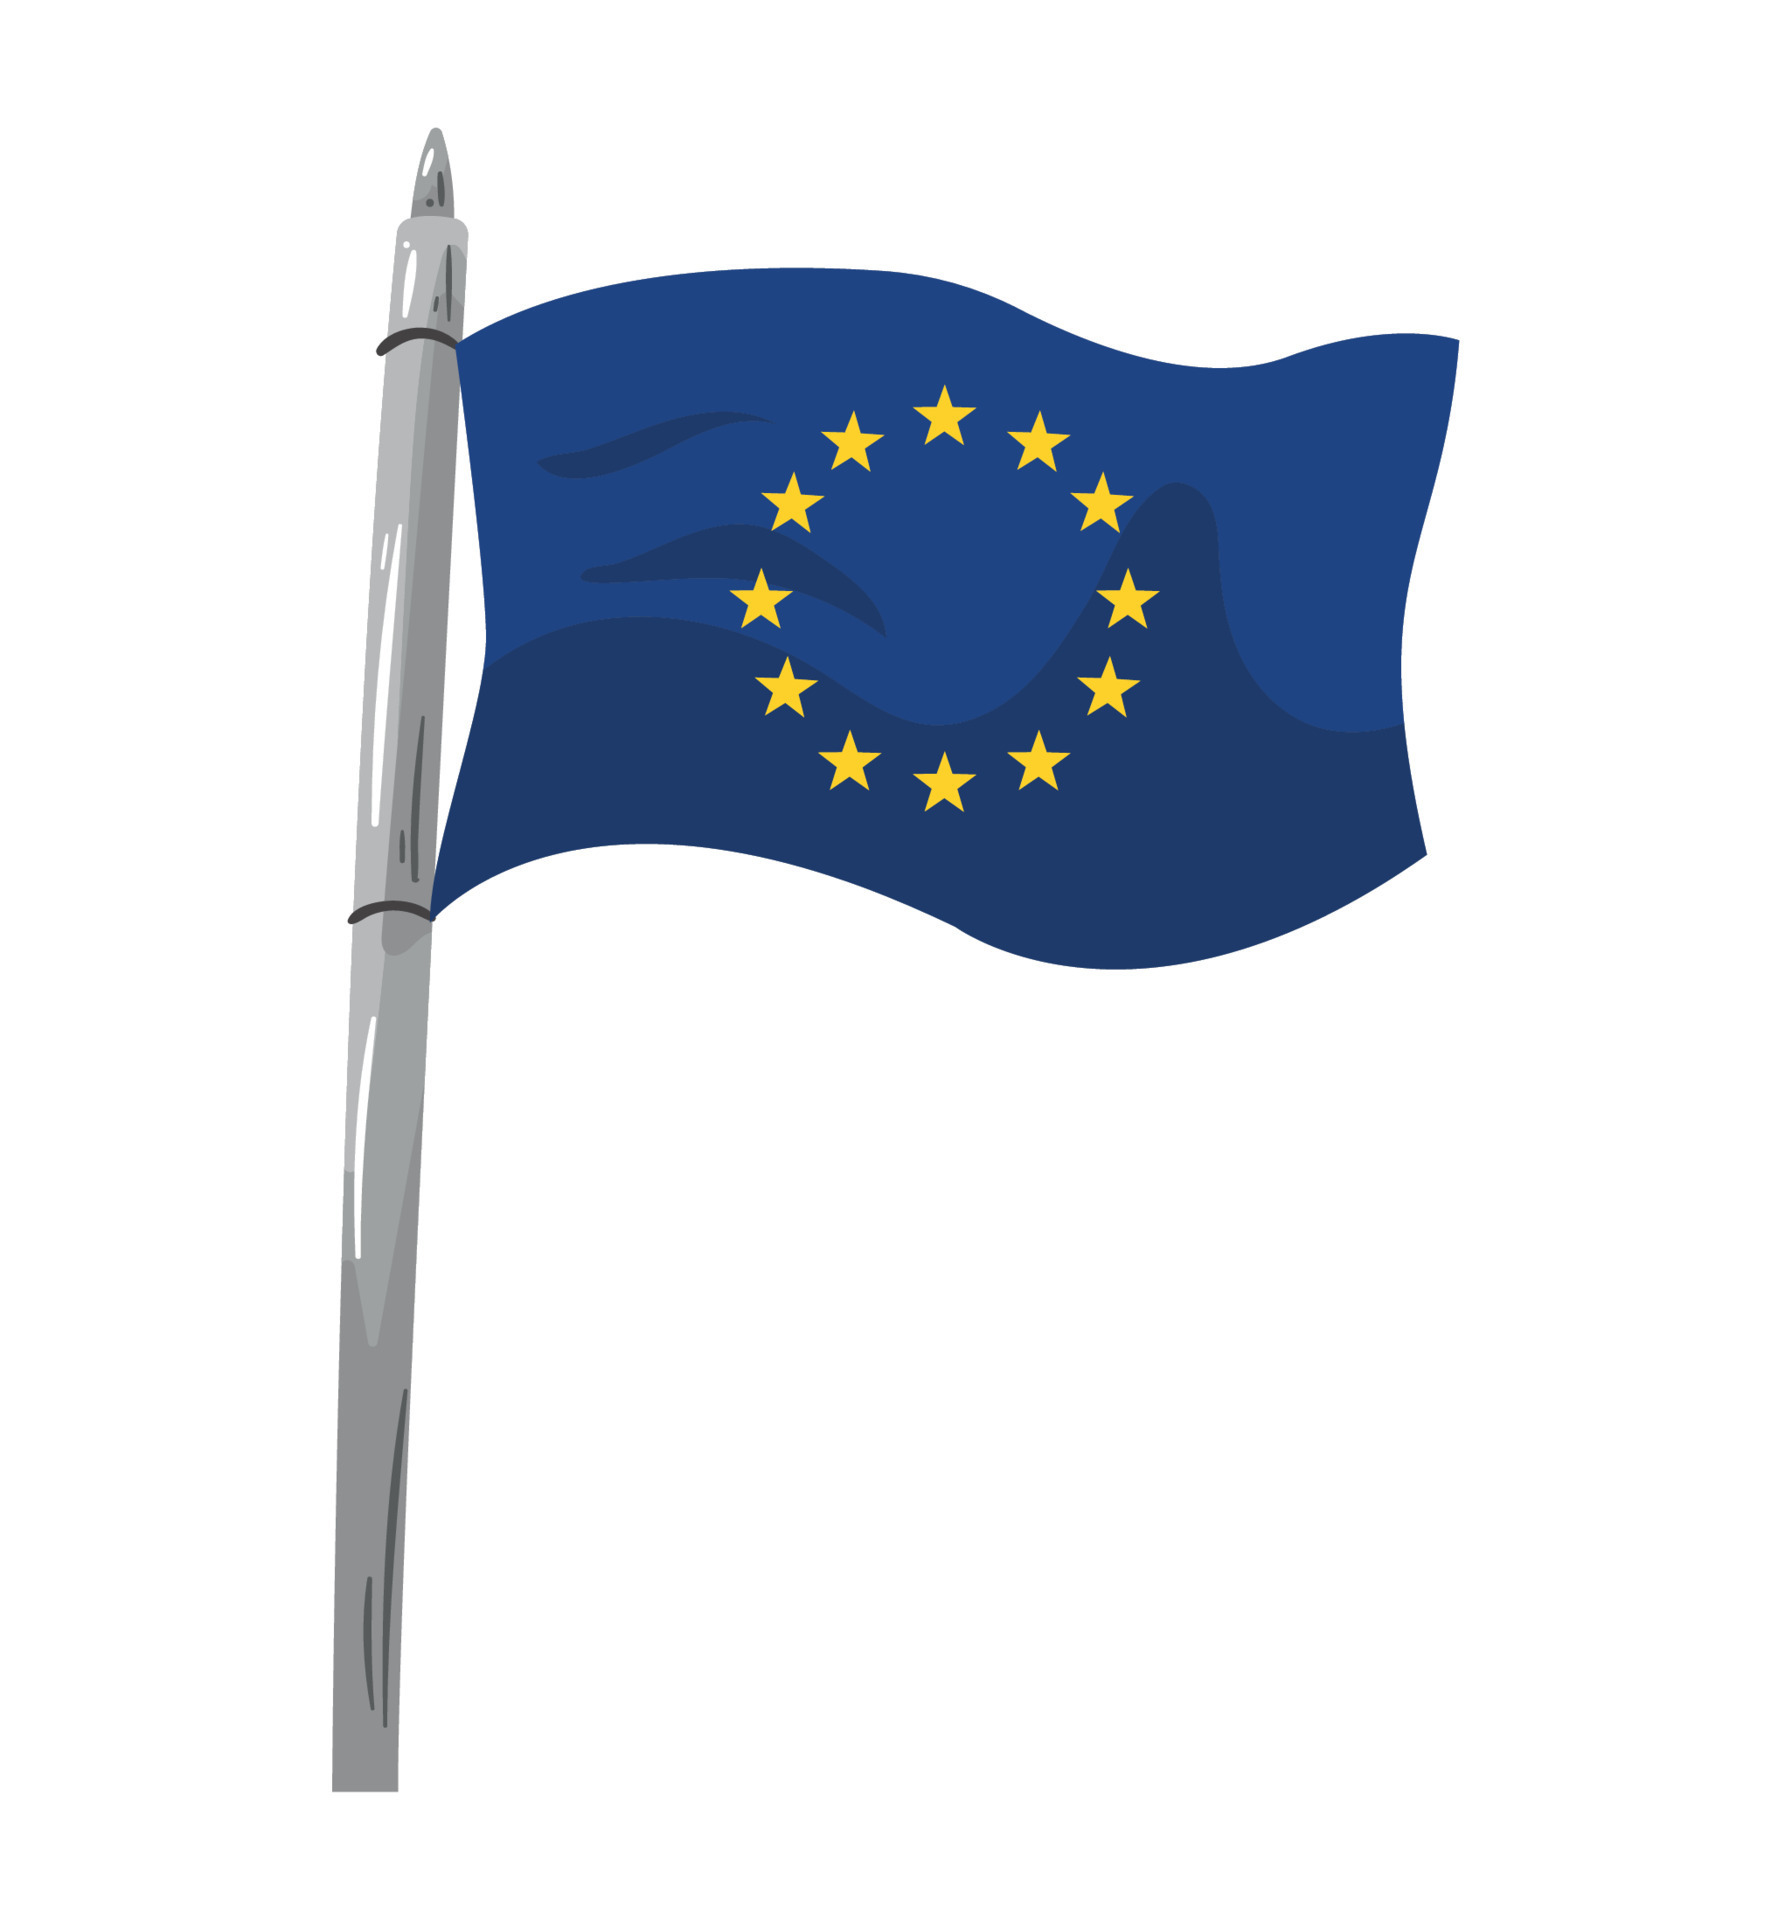 Bandeiras europeias do vetor 93221 Vetor no Vecteezy